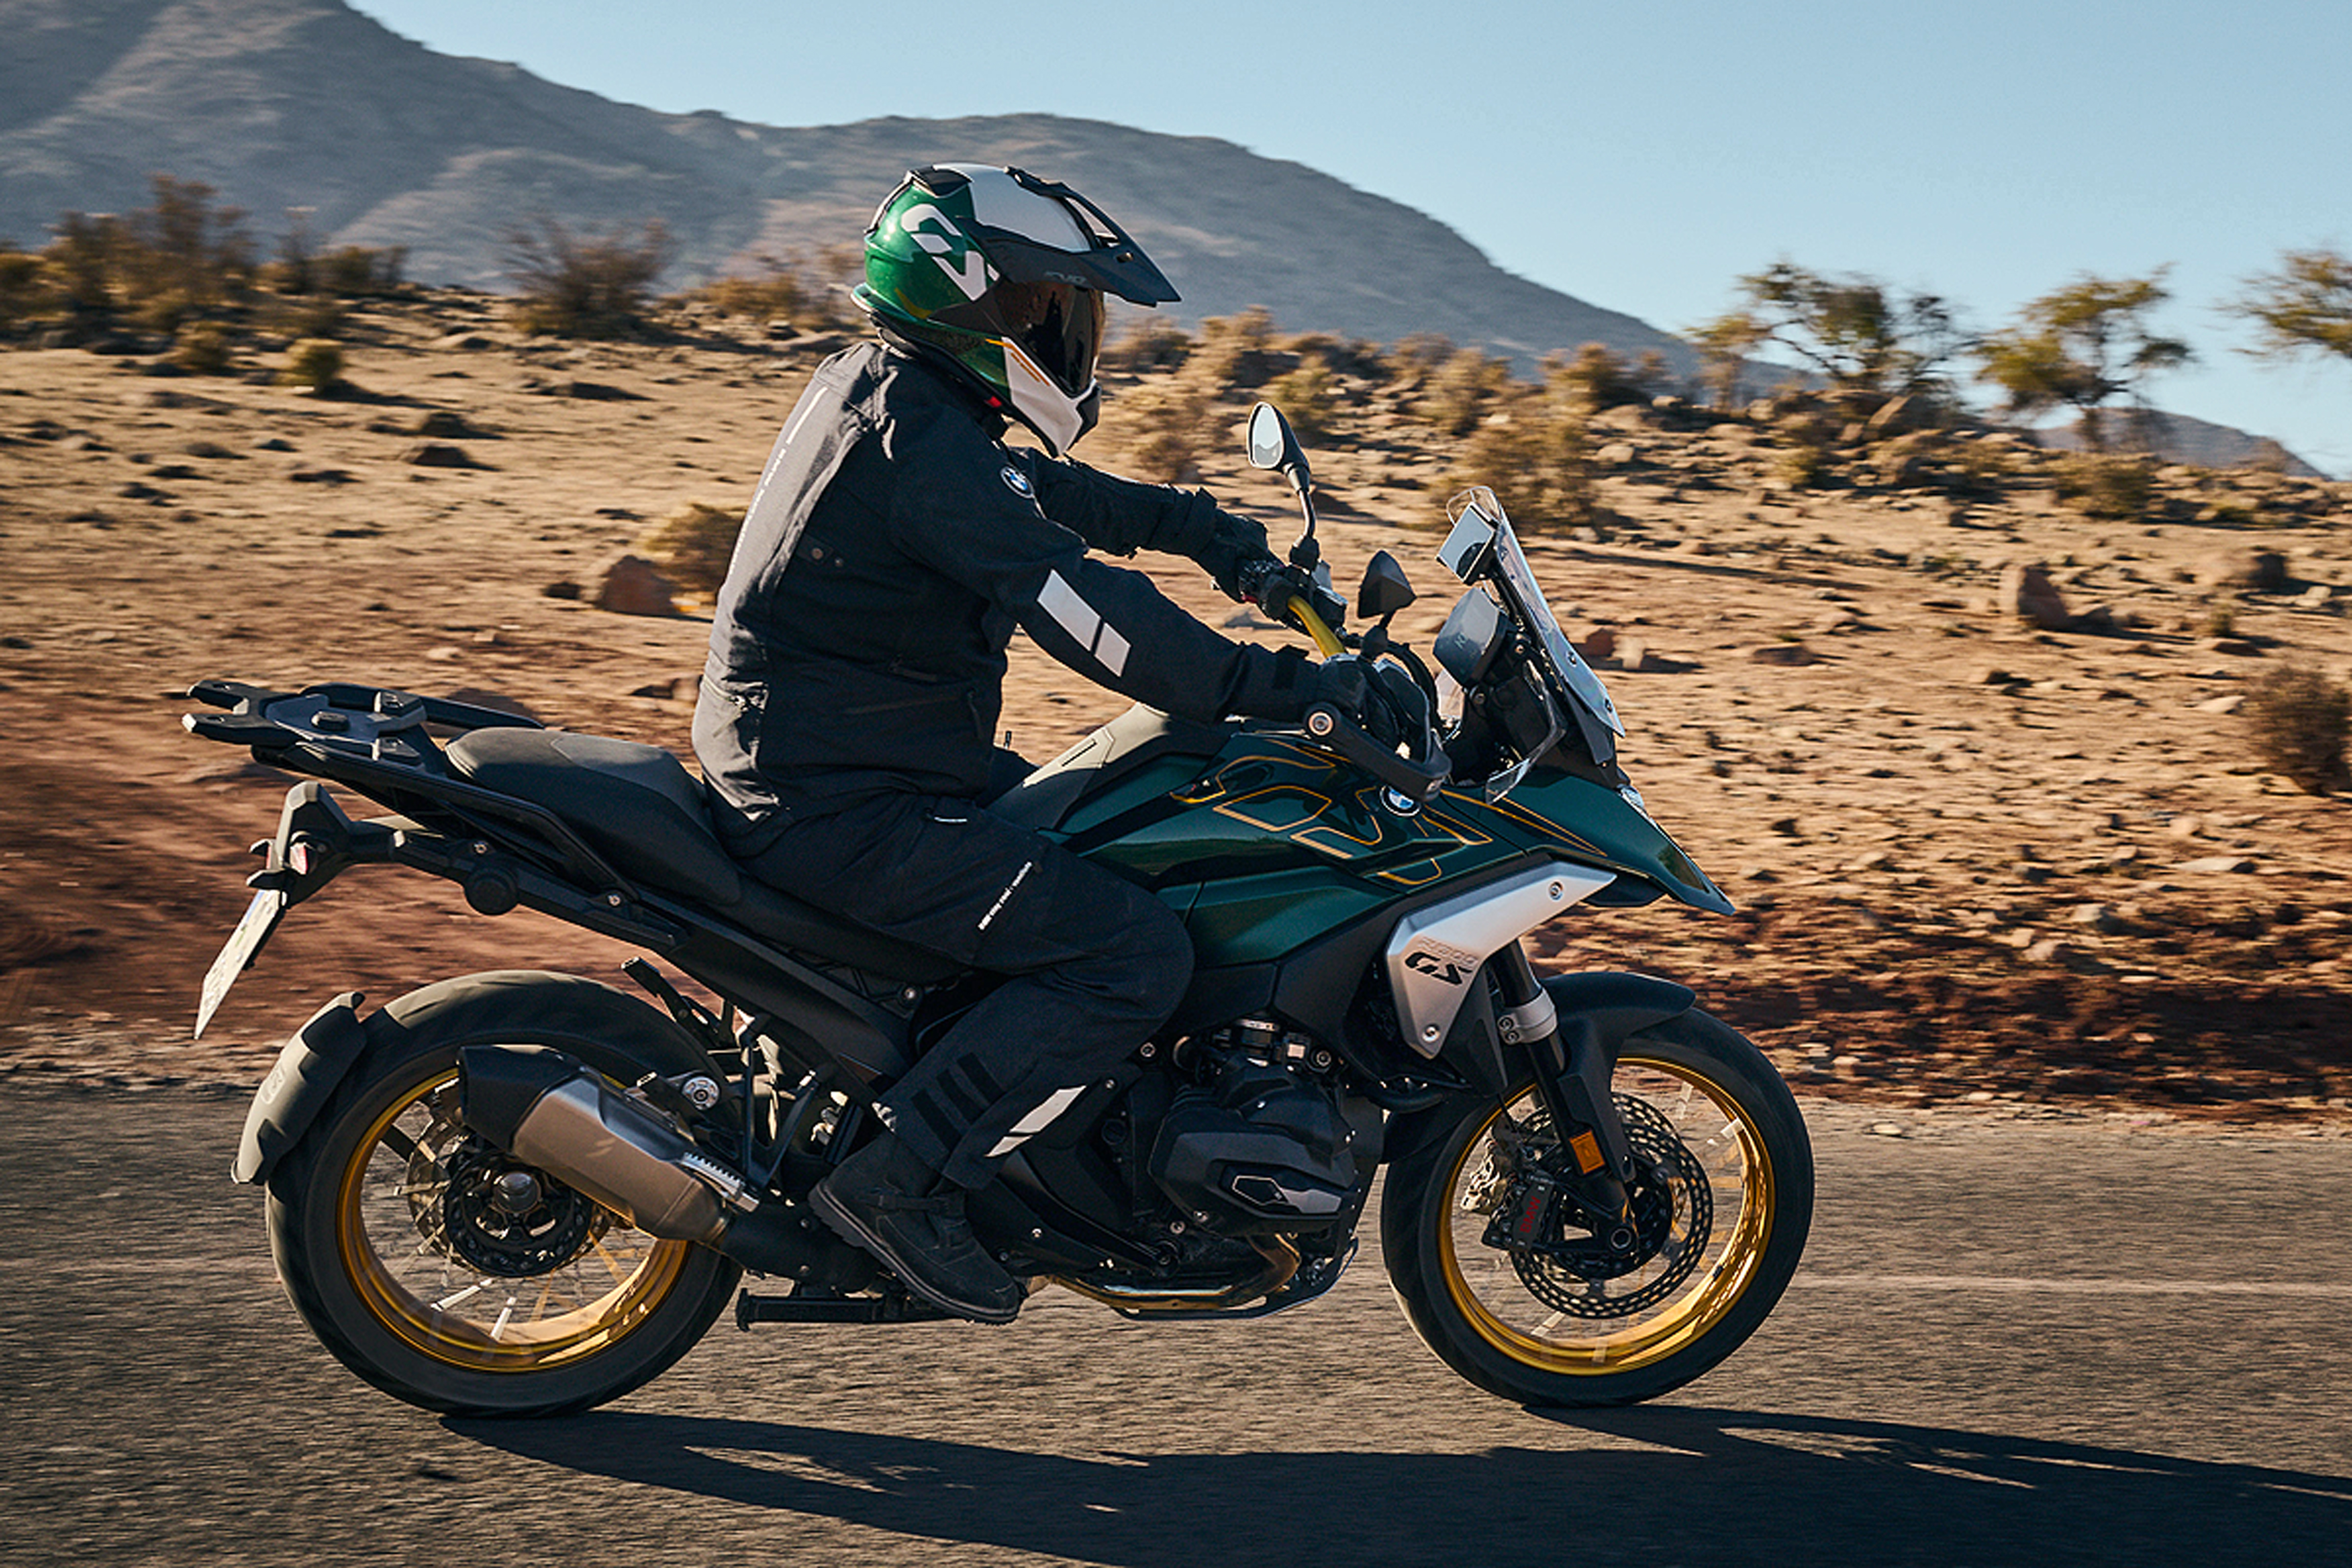 Motorräder, BMW Motorrad stellt neue R 1300 GS vor